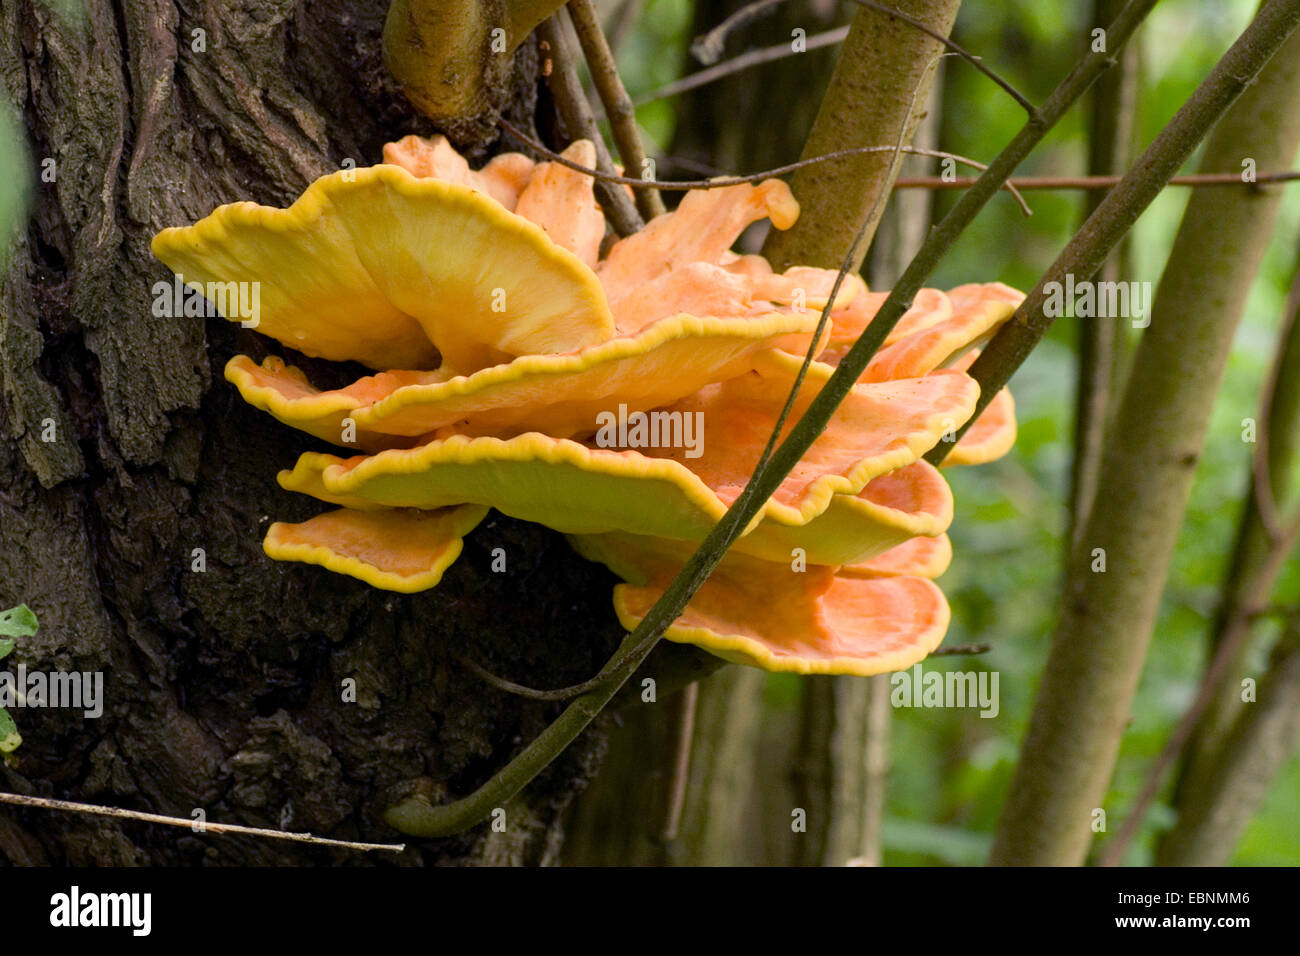 Le Poulet des bois, soufre polypore, soufre (plateau) sulphureus : fructification, bodie sur tronc d'arbre, Allemagne Banque D'Images